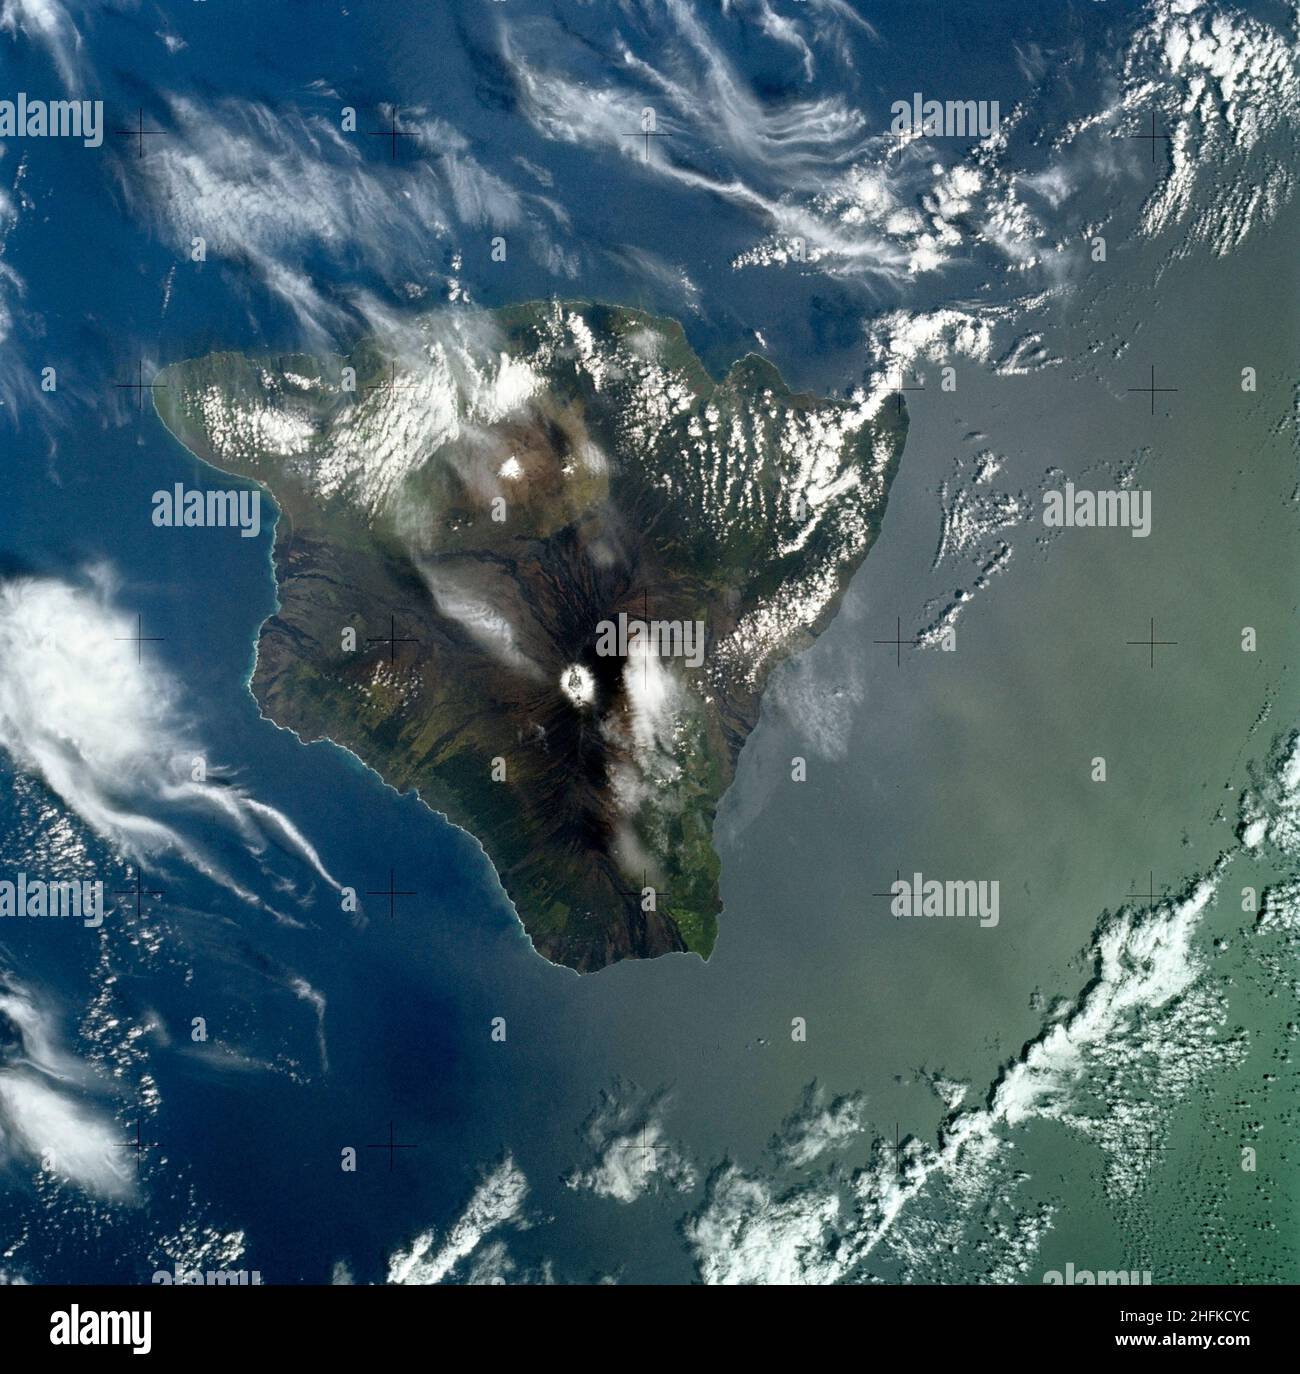 (8. Januar 1974) --- Eine vertikale Ansicht der Insel Hawaii, Staat Hawaii, wie sie von der Skylab-Raumstation in der Erdumlaufbahn mit einem Skylab 4-Besatzungsmacht fotografiert wurde. Die verwendete Kamera war eine Handkamera von Hasselblad, mit SO-368-Ektachrome-Film mit mittlerer Geschwindigkeit. Dieses Foto, aufgenommen am 8. Januar 1974, ist sehr nützlich für Studien von vulkanischen Gebieten. Prominente vulkanische Merkmale wie die Gipfelkaldera auf Mauna Loa, der erloschene Vulkan Mauna Kea, die Kilauea-Caldera und der Grubenkrater auf Halo mau mau innerhalb der Caldera sind leicht zu identifizieren. (Kilauea wurde während der Mission häufig ausgebrochen). D Stockfoto